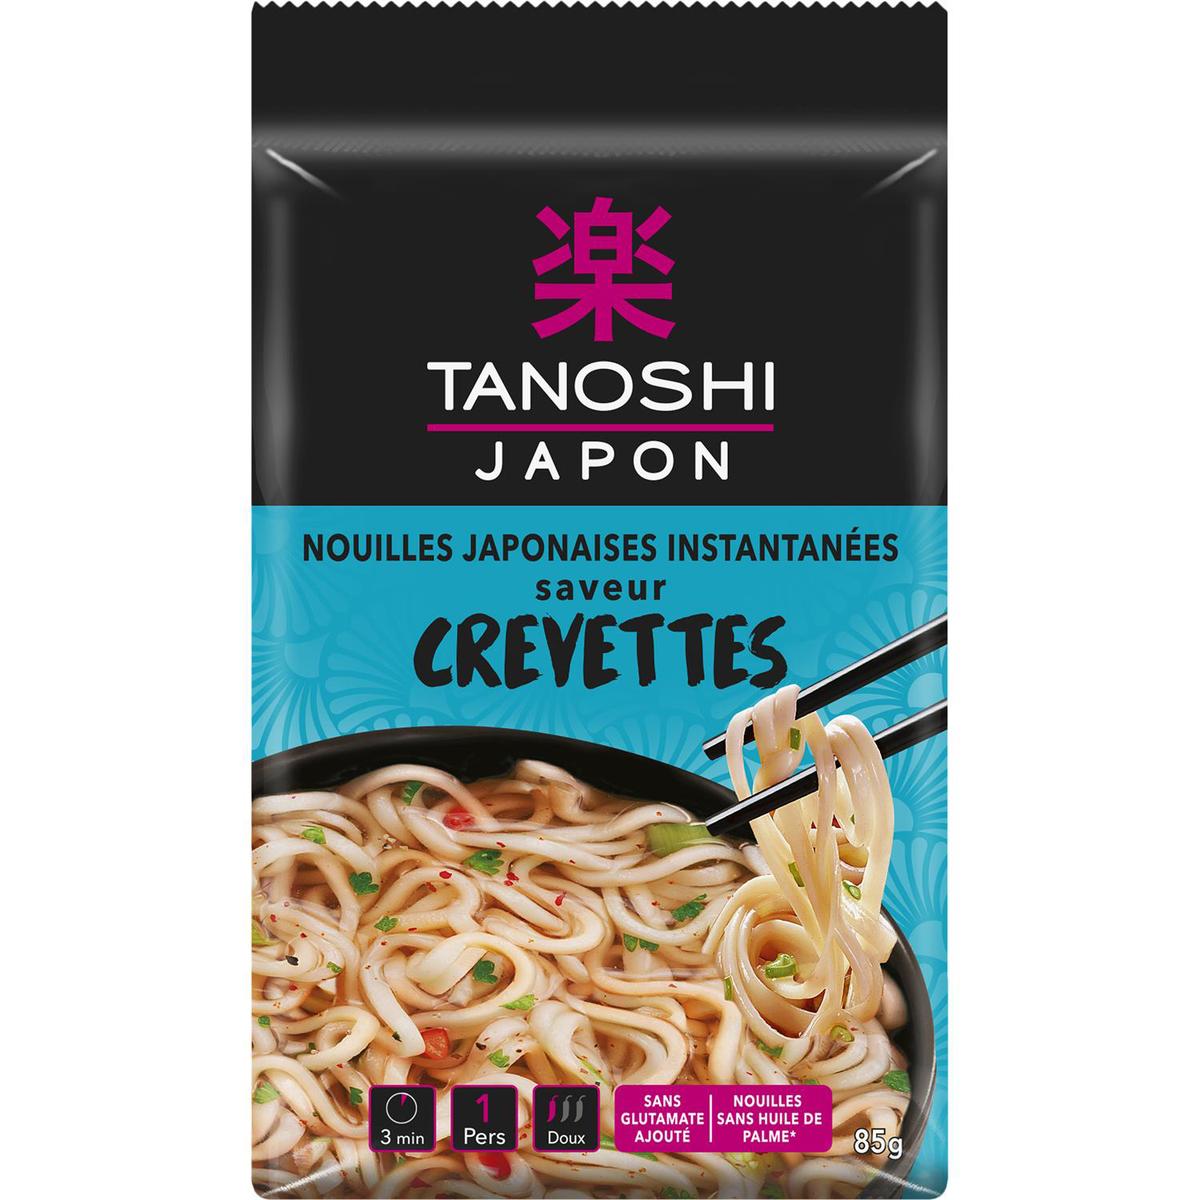 Tanoshi - Japon Nouilles de blé instantanées asiatiques saveur crevette